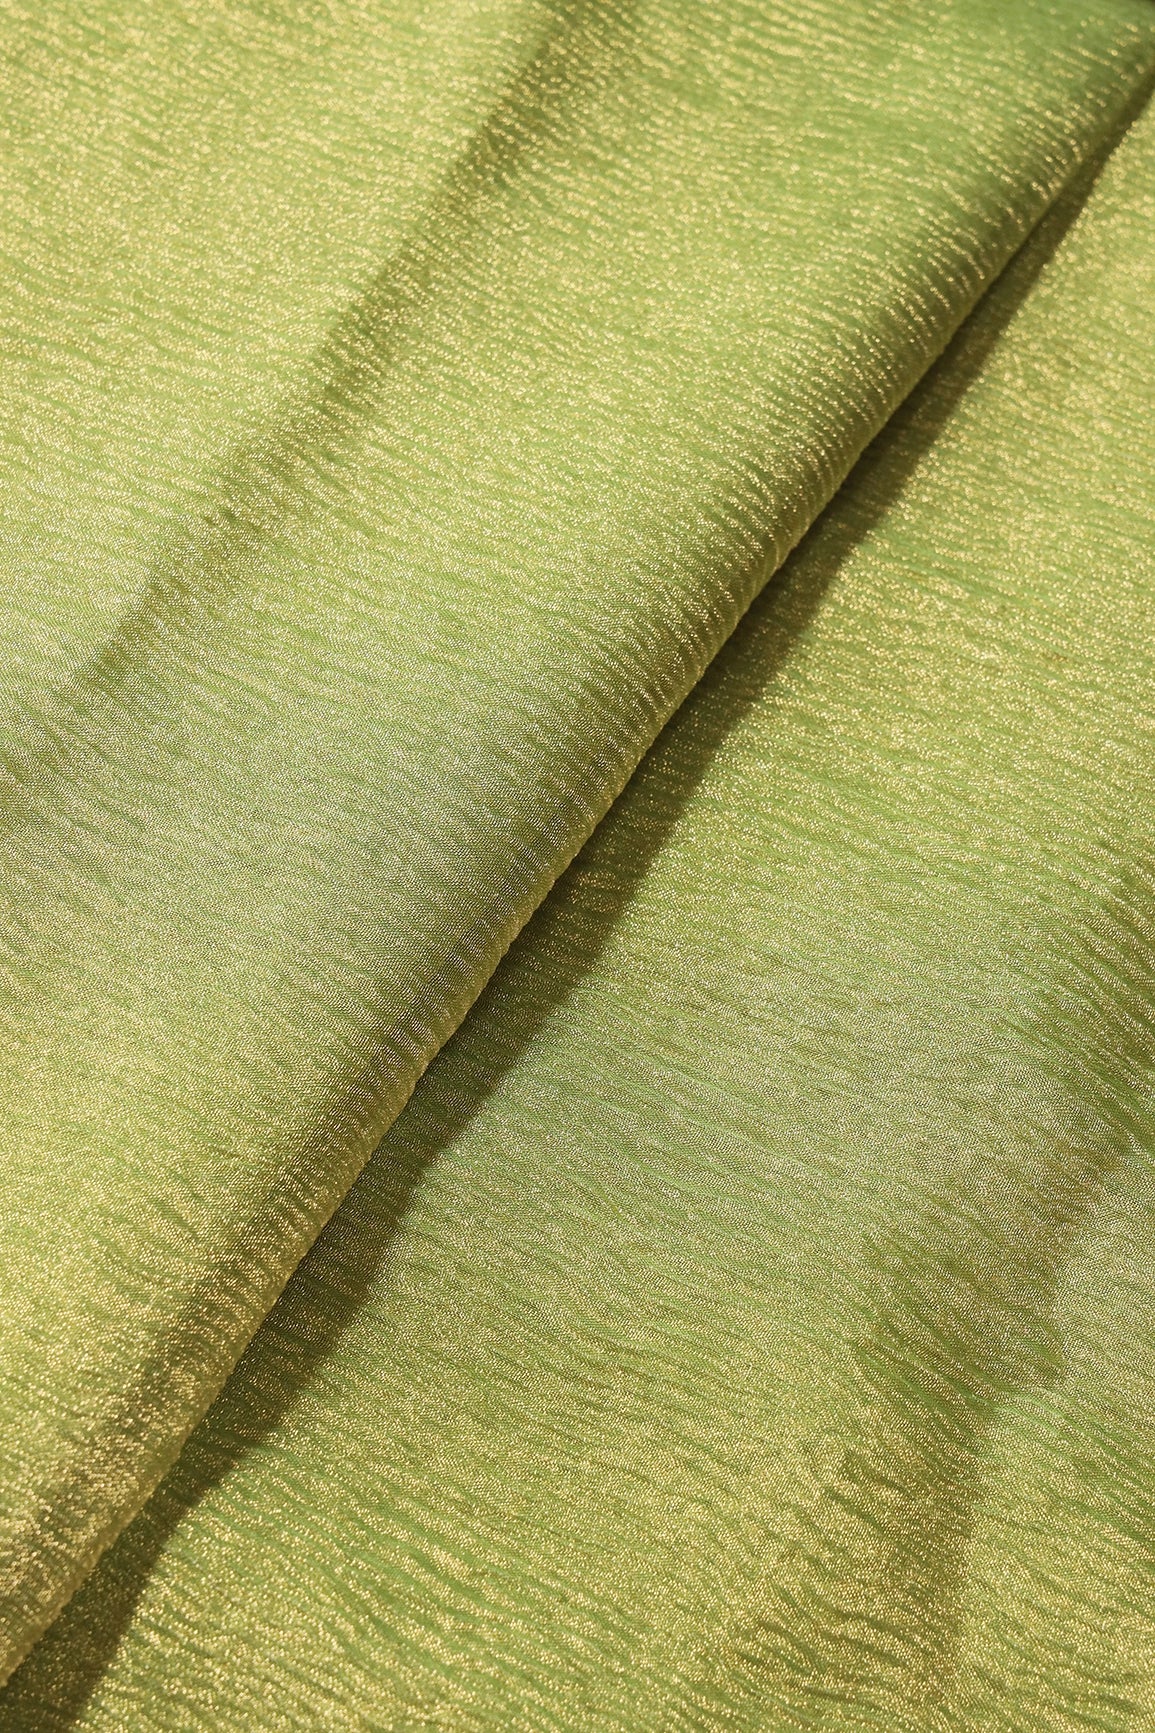 Parrot Green Banarasi Zari Crush Tissue Fabric